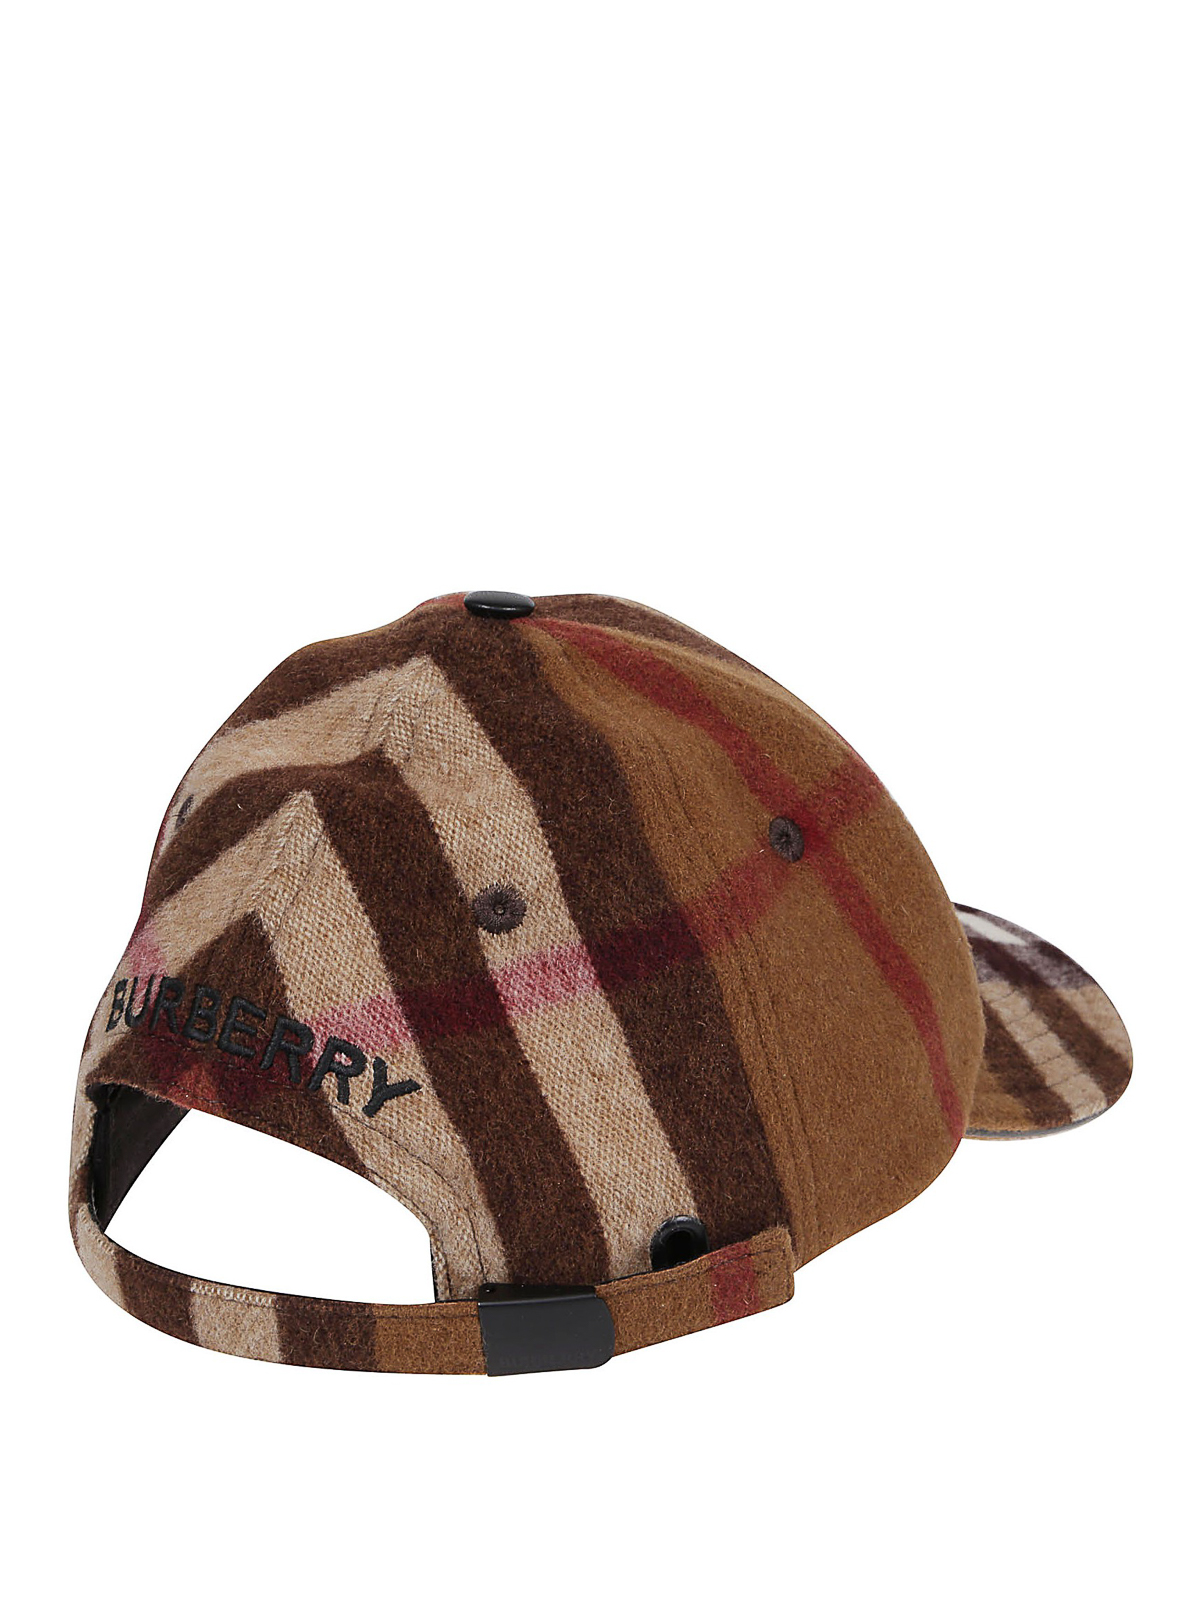 Hats & caps Burberry - Tartan patterned wool baseball cap - 8036924